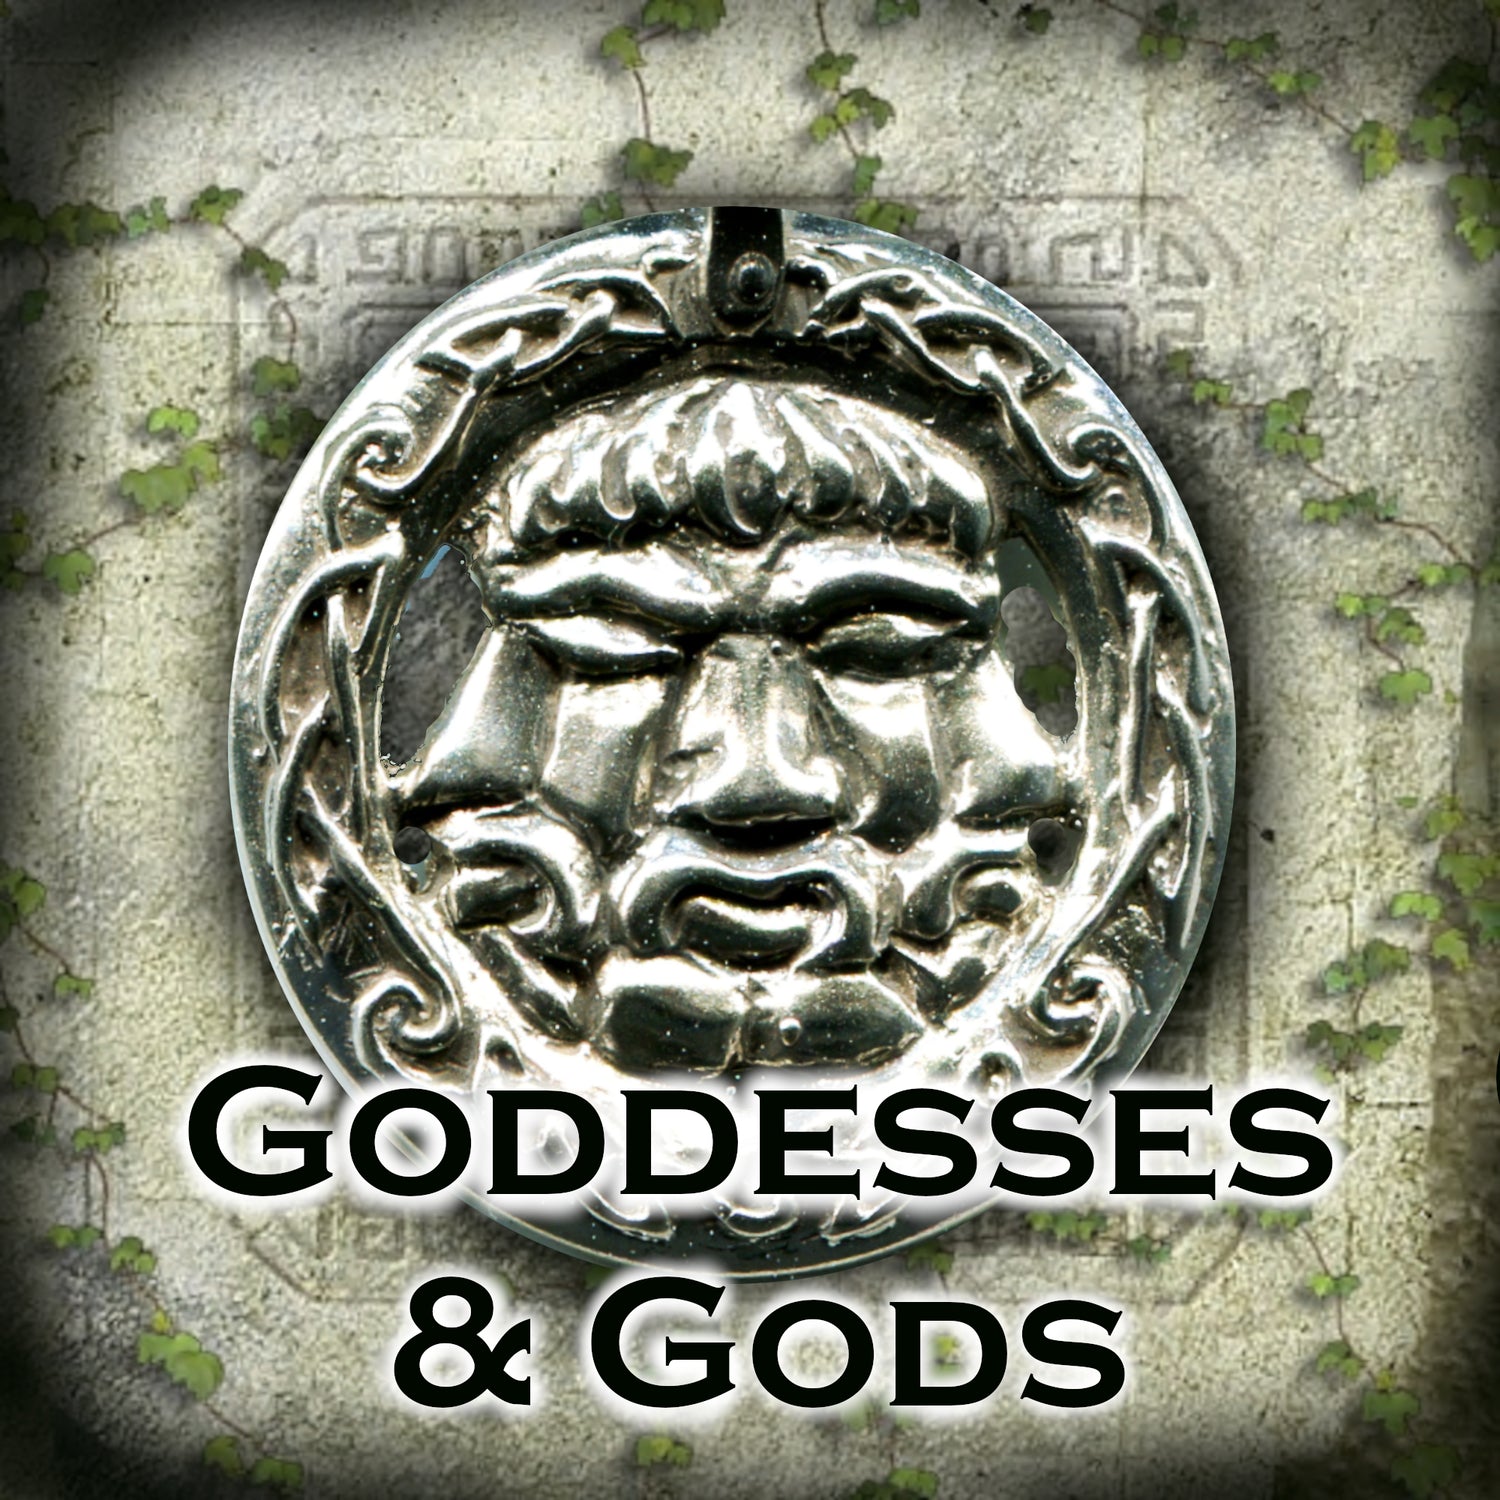 Goddesses & Gods